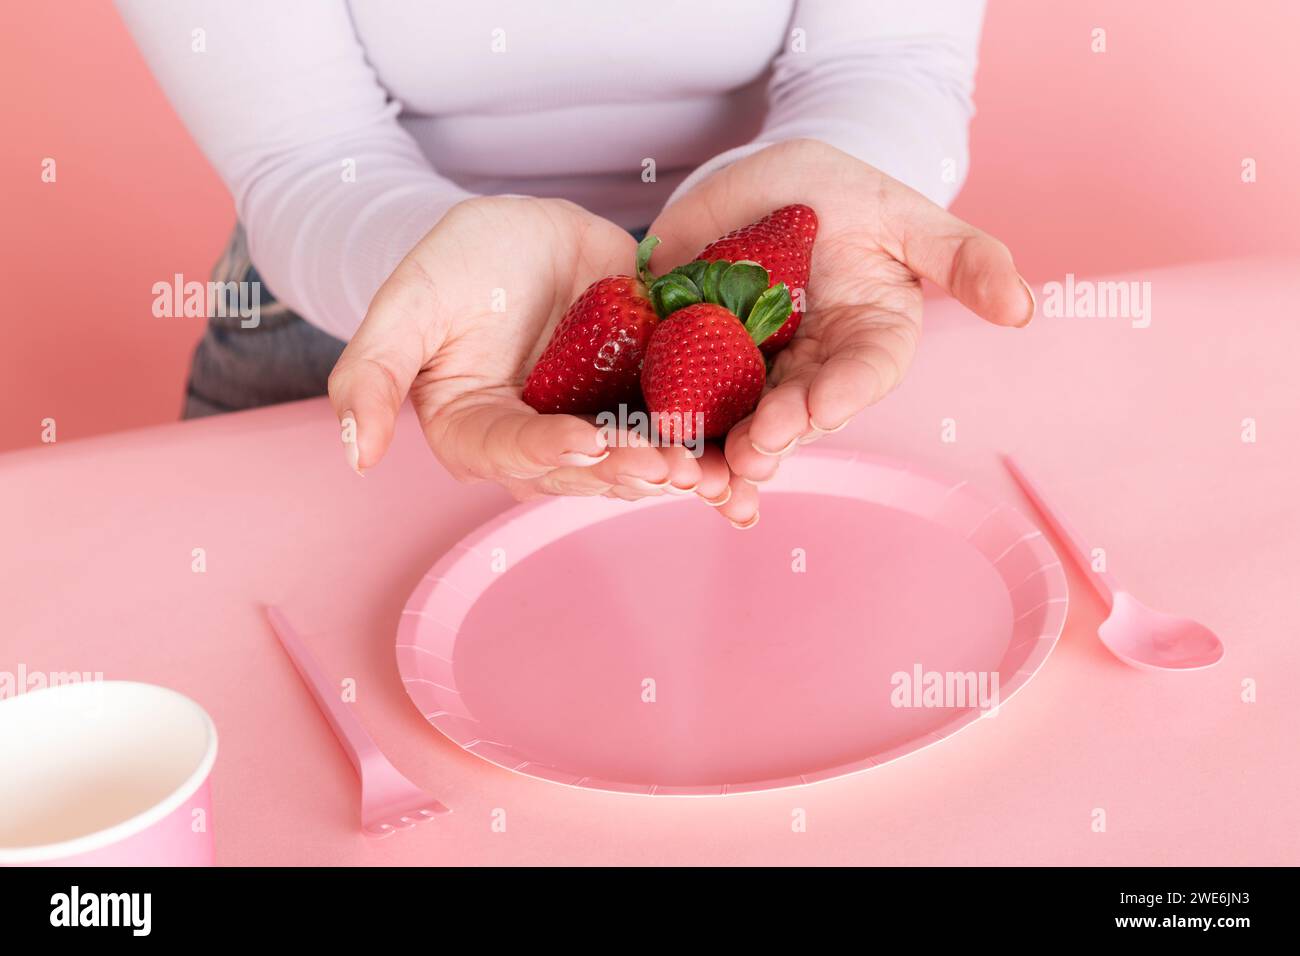 Femme tenant des fraises en main sur une assiette vide rose Banque D'Images